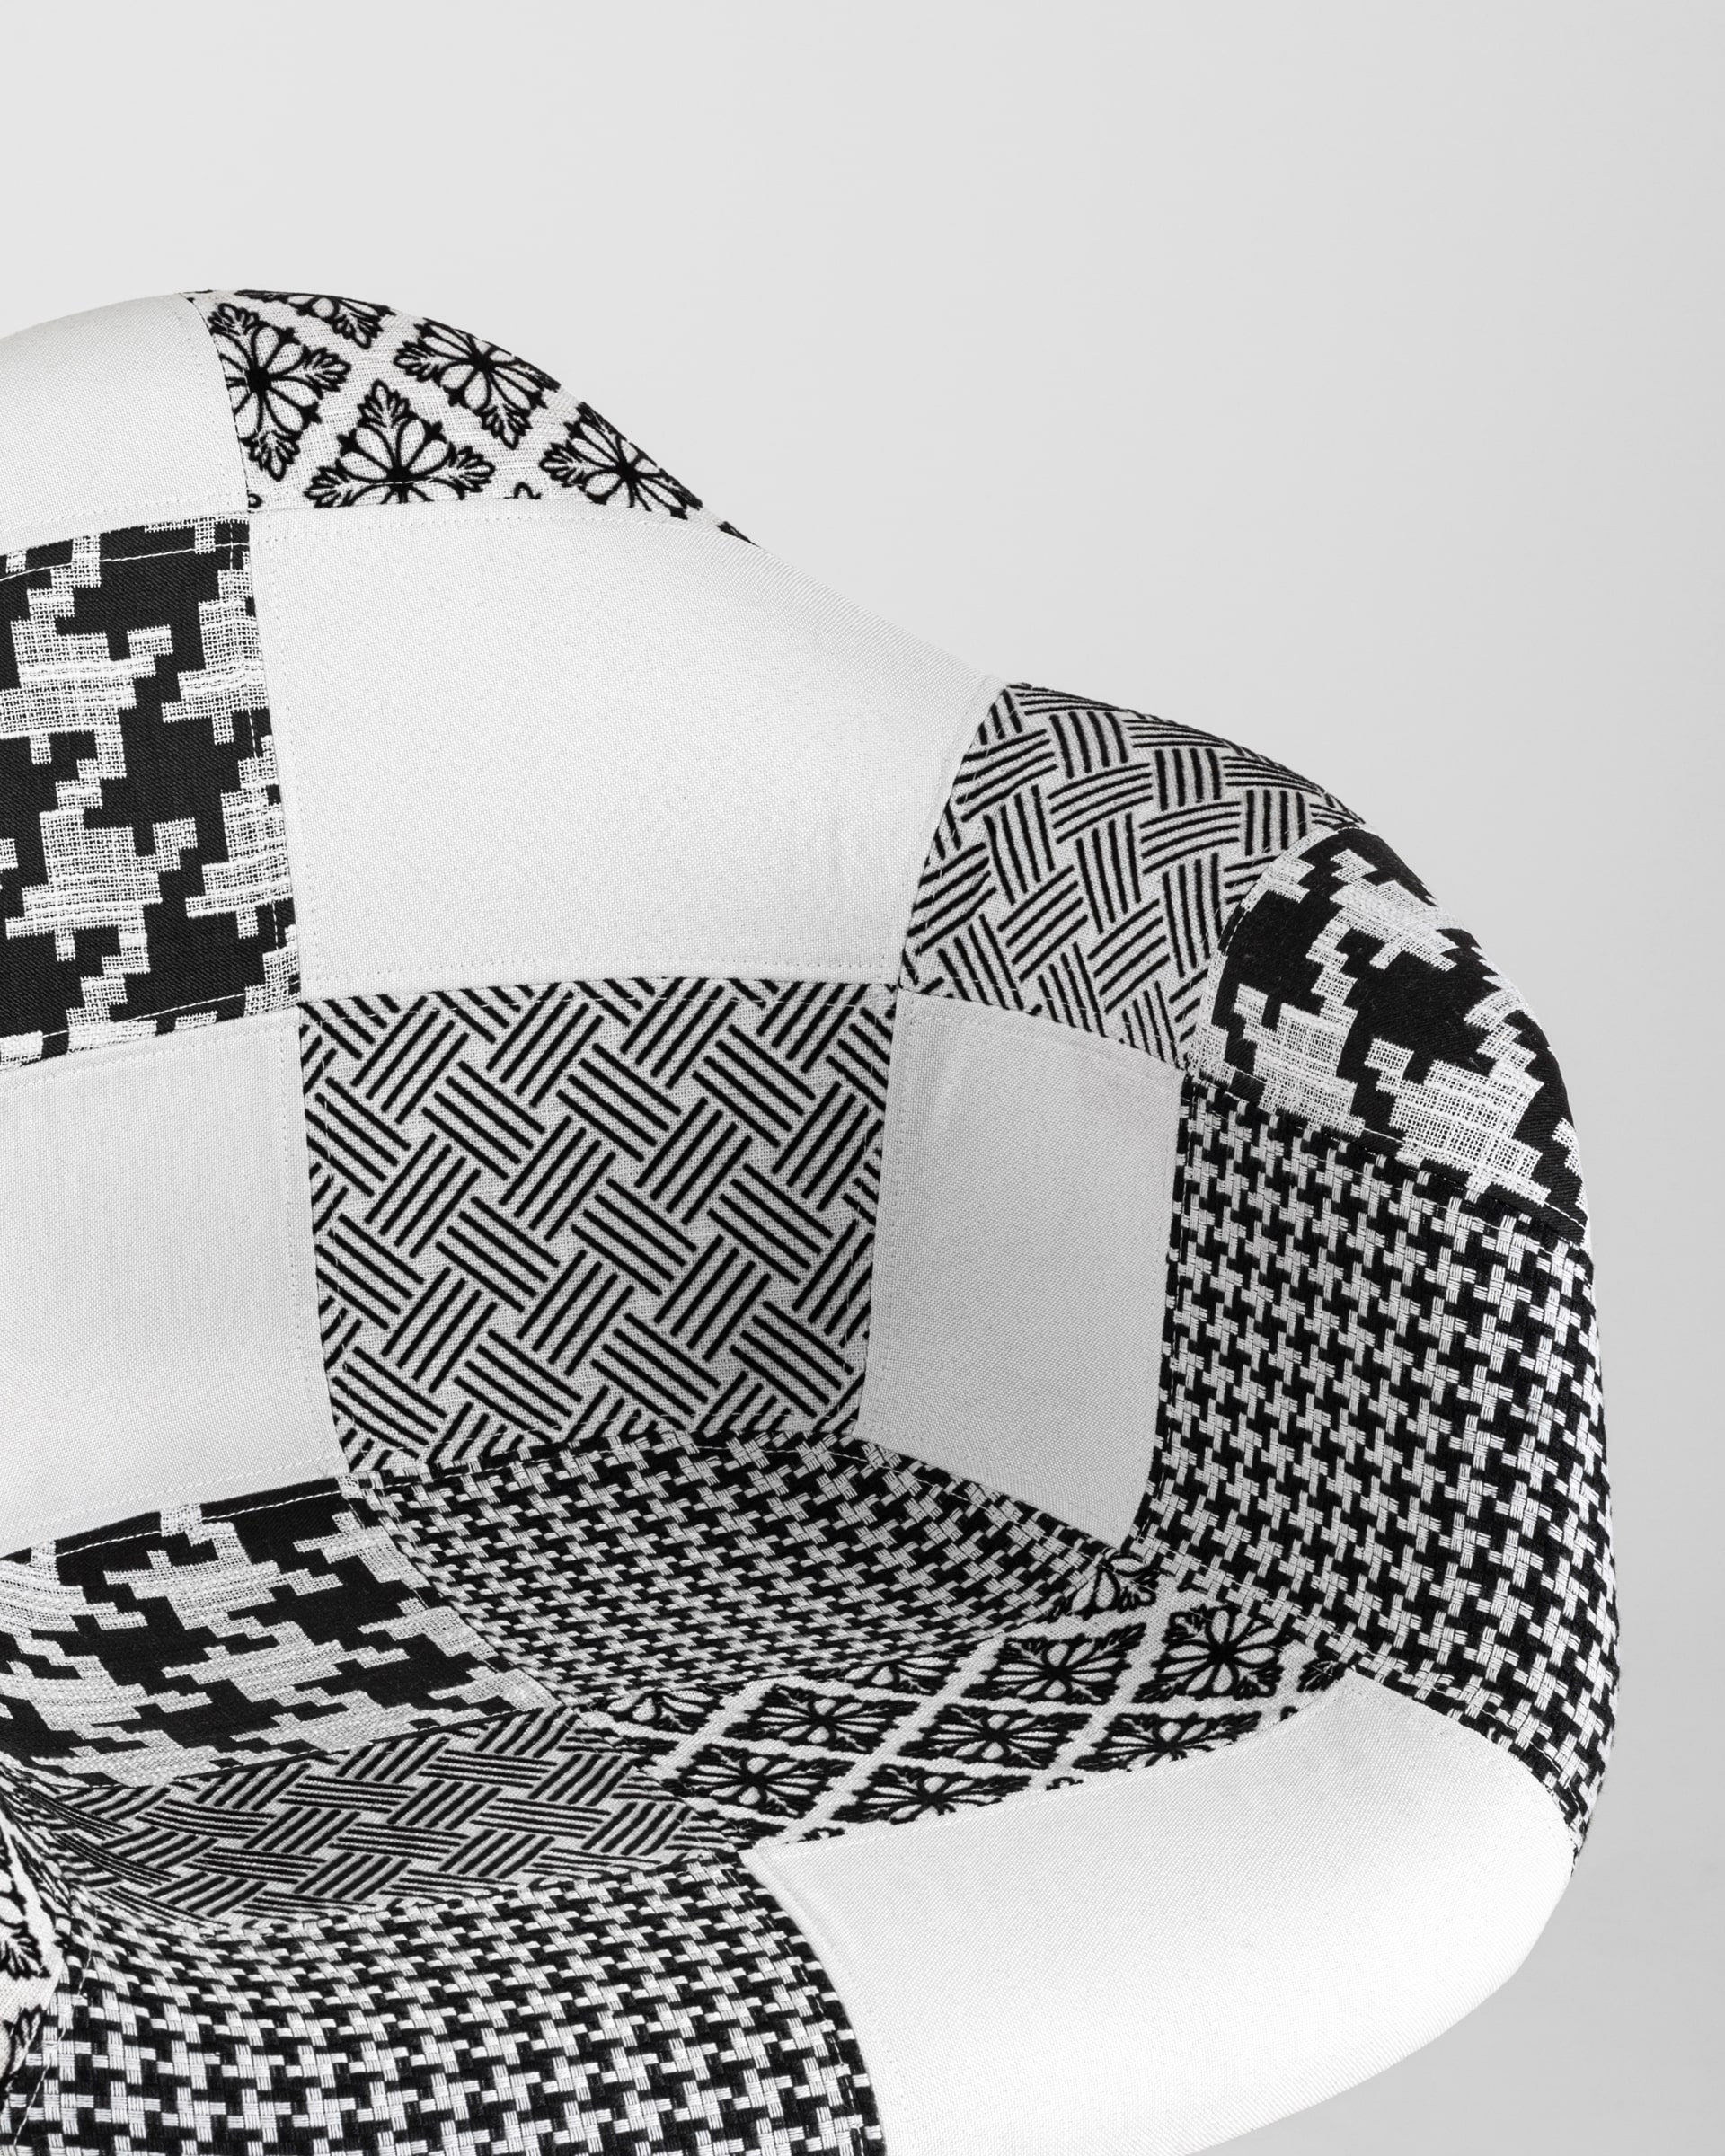 Кресло Eames в стиле пэчворк черно-белое, ножки массив бука